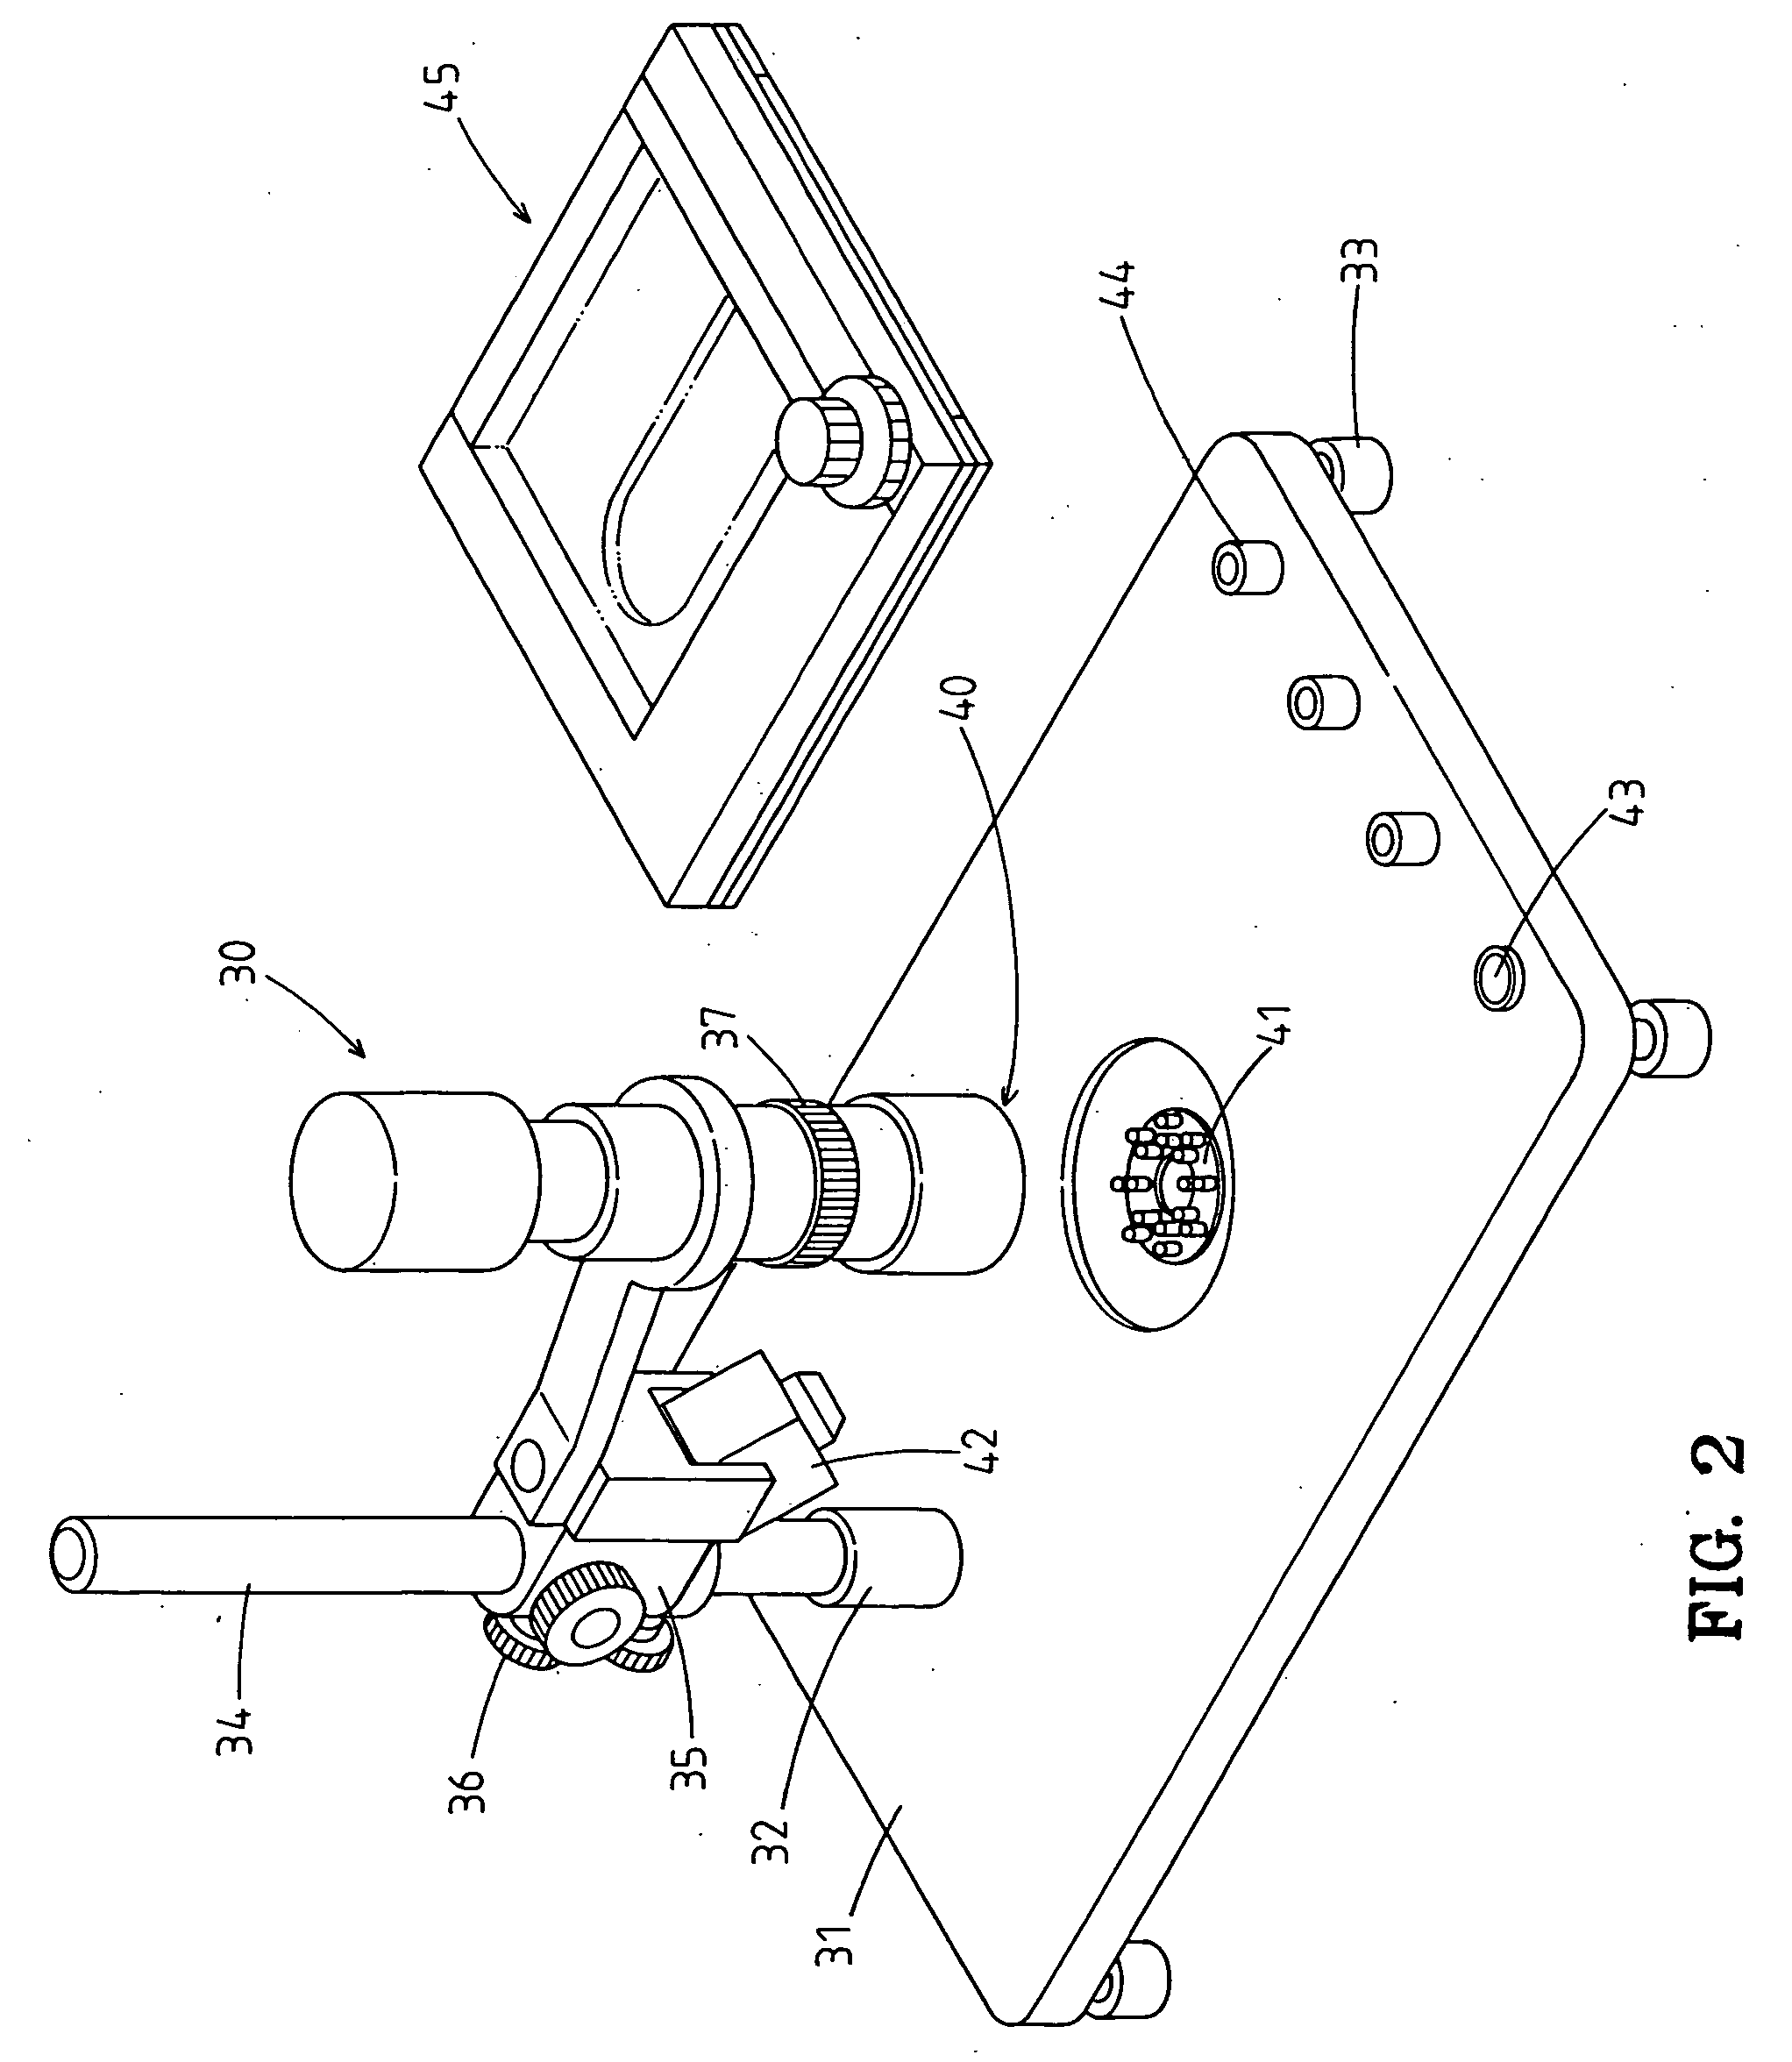 Micro-image examining apparatus